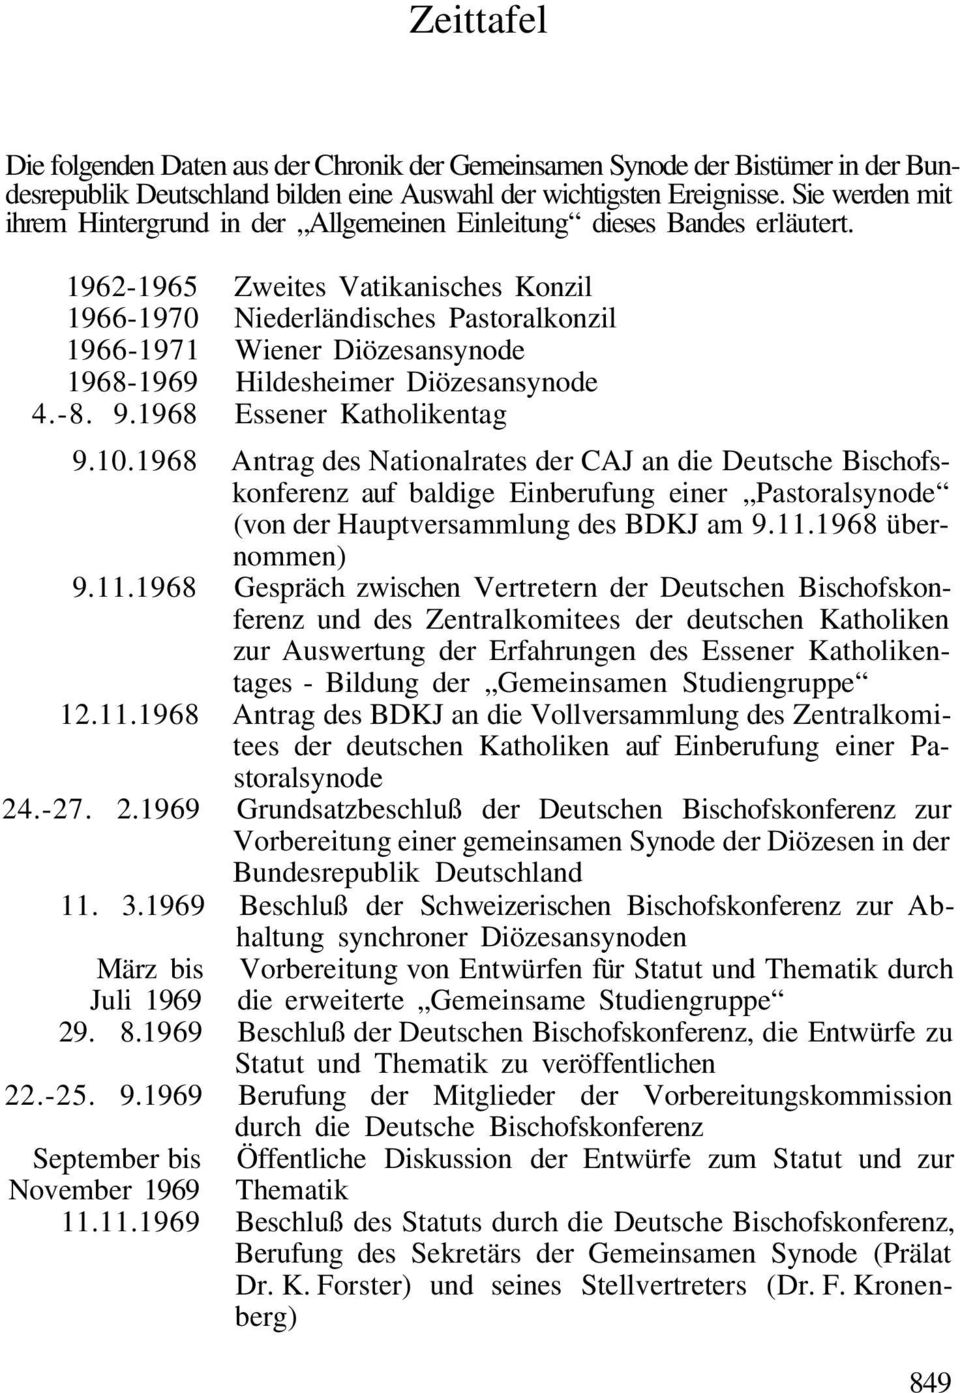 1962-1965 Zweites Vatikanisches Konzil 1966-1970 Niederländisches Pastoralkonzil 1966-1971 Wiener Diözesansynode 1968-1969 Hildesheimer Diözesansynode 4.-8. 9.1968 Essener Katholikentag 9.10.